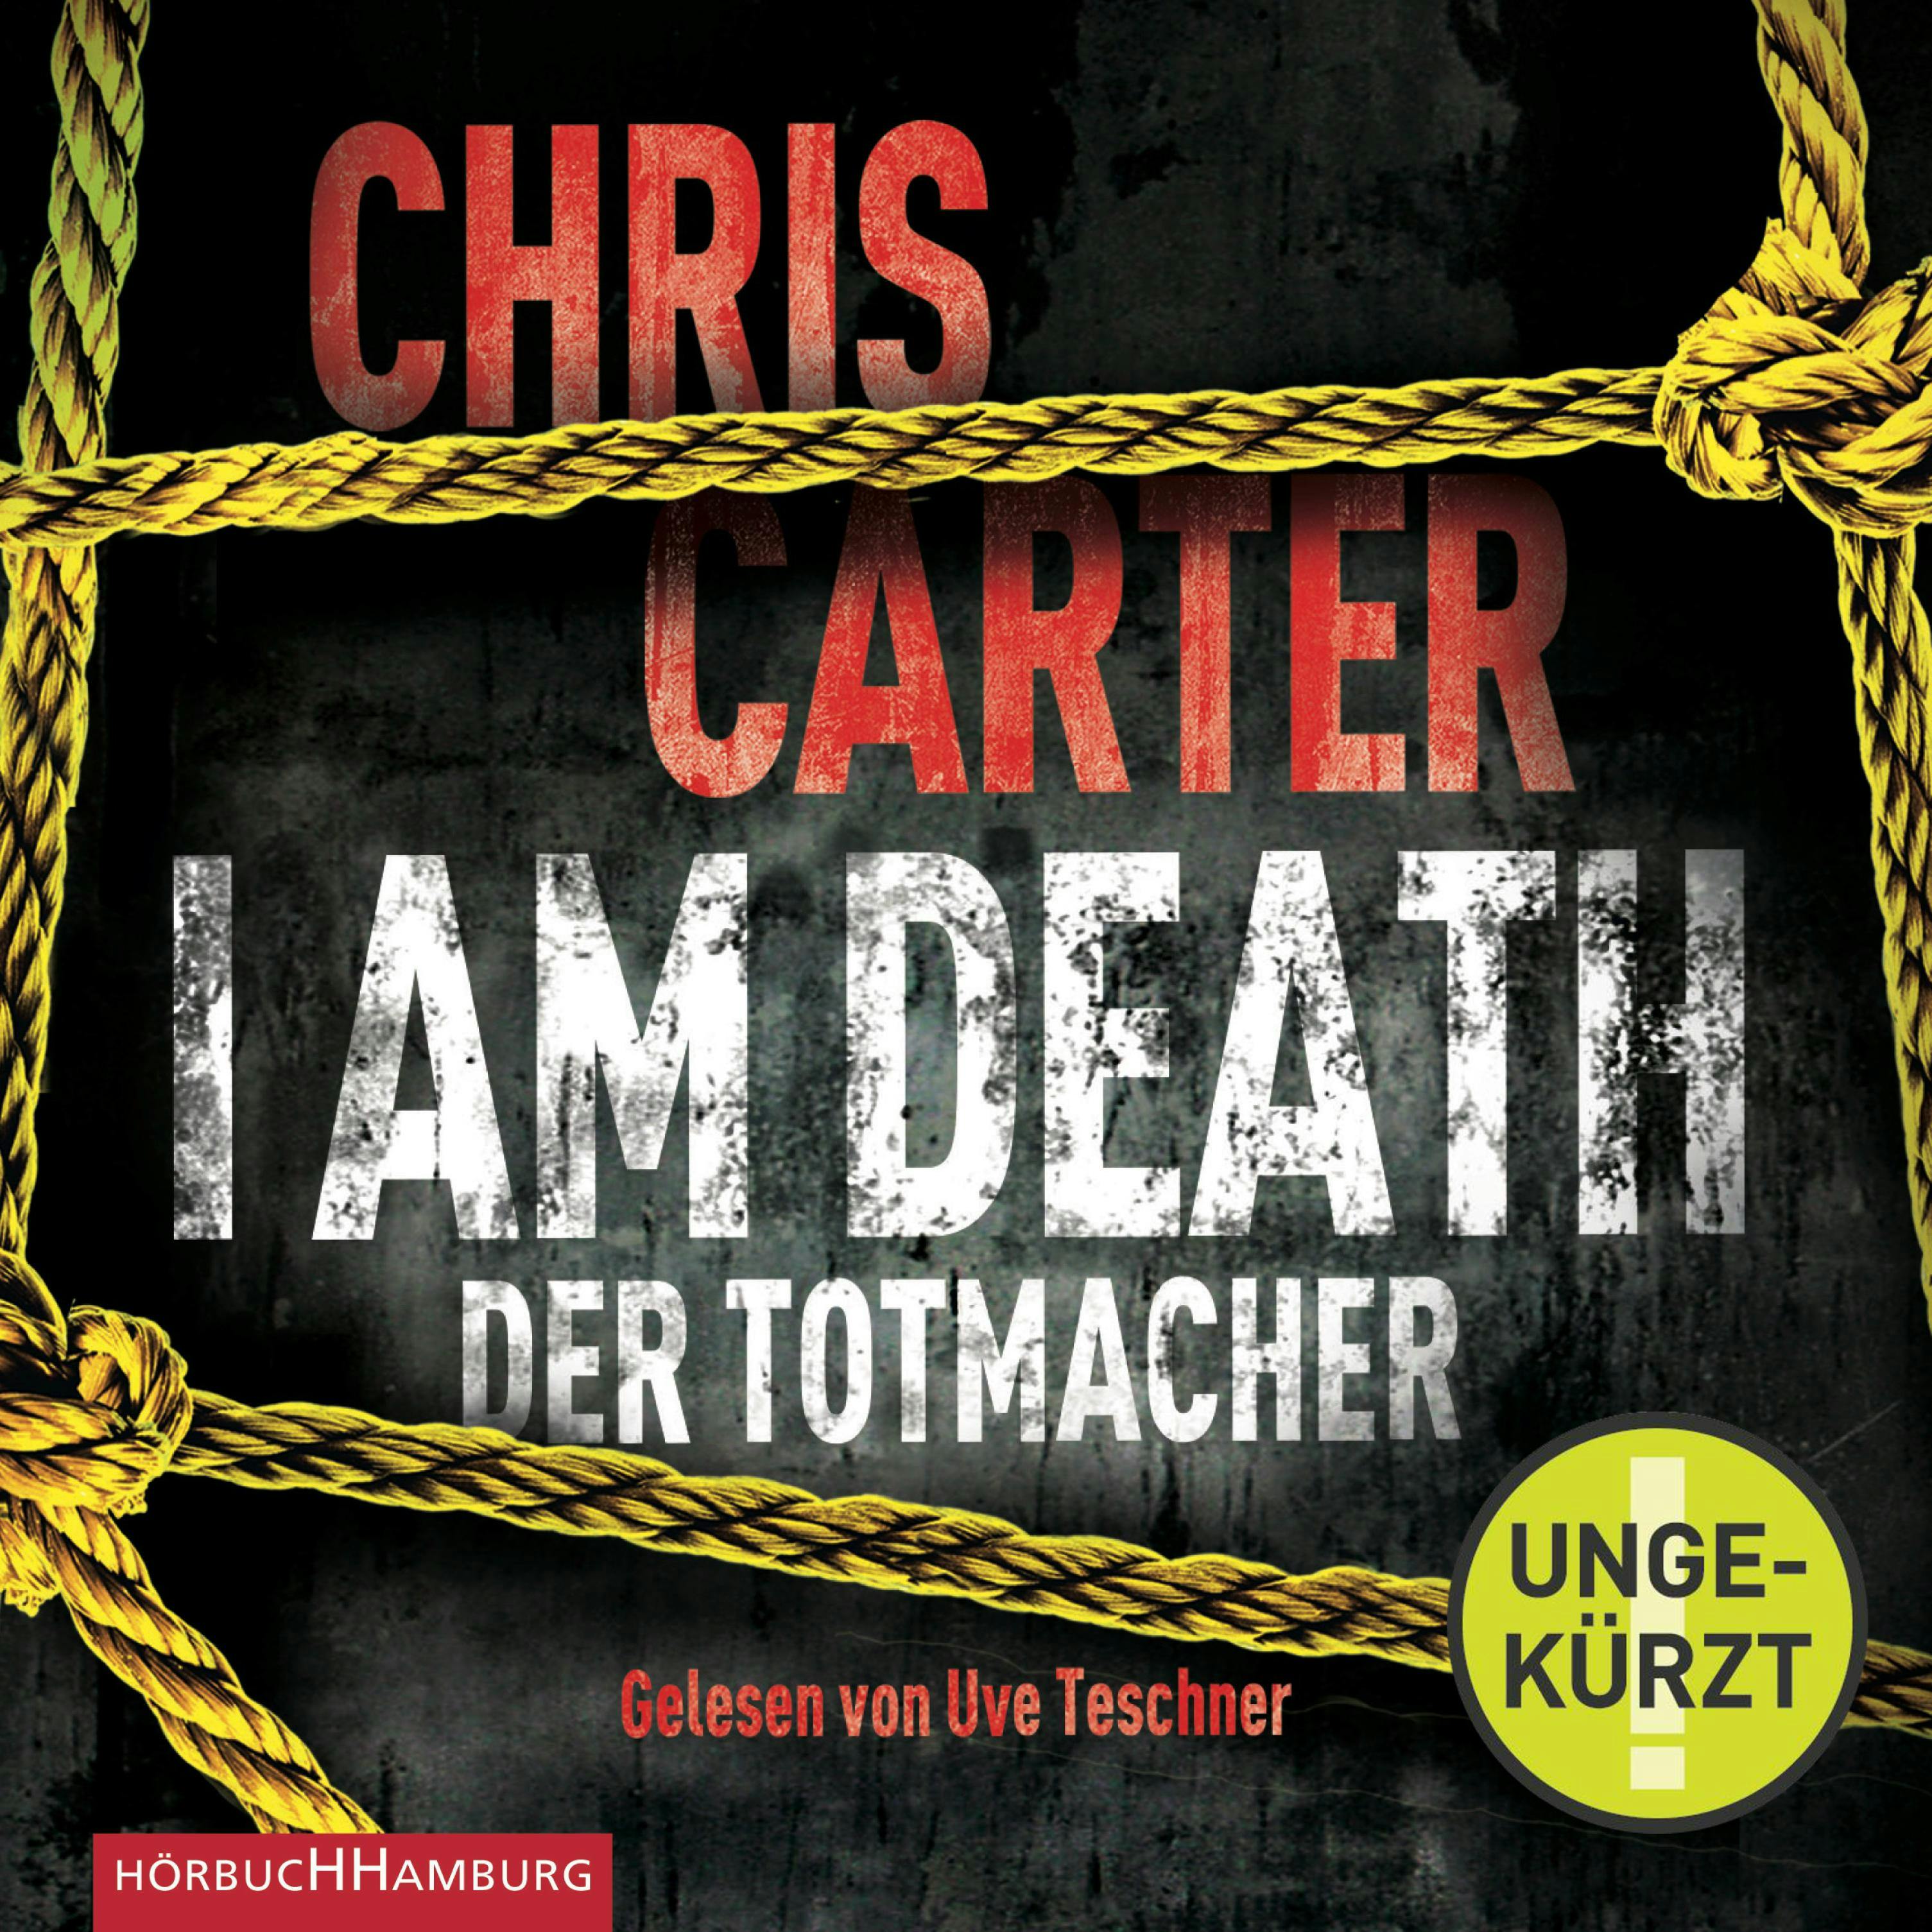 I Am Death. Der Totmacher - Chris Carter